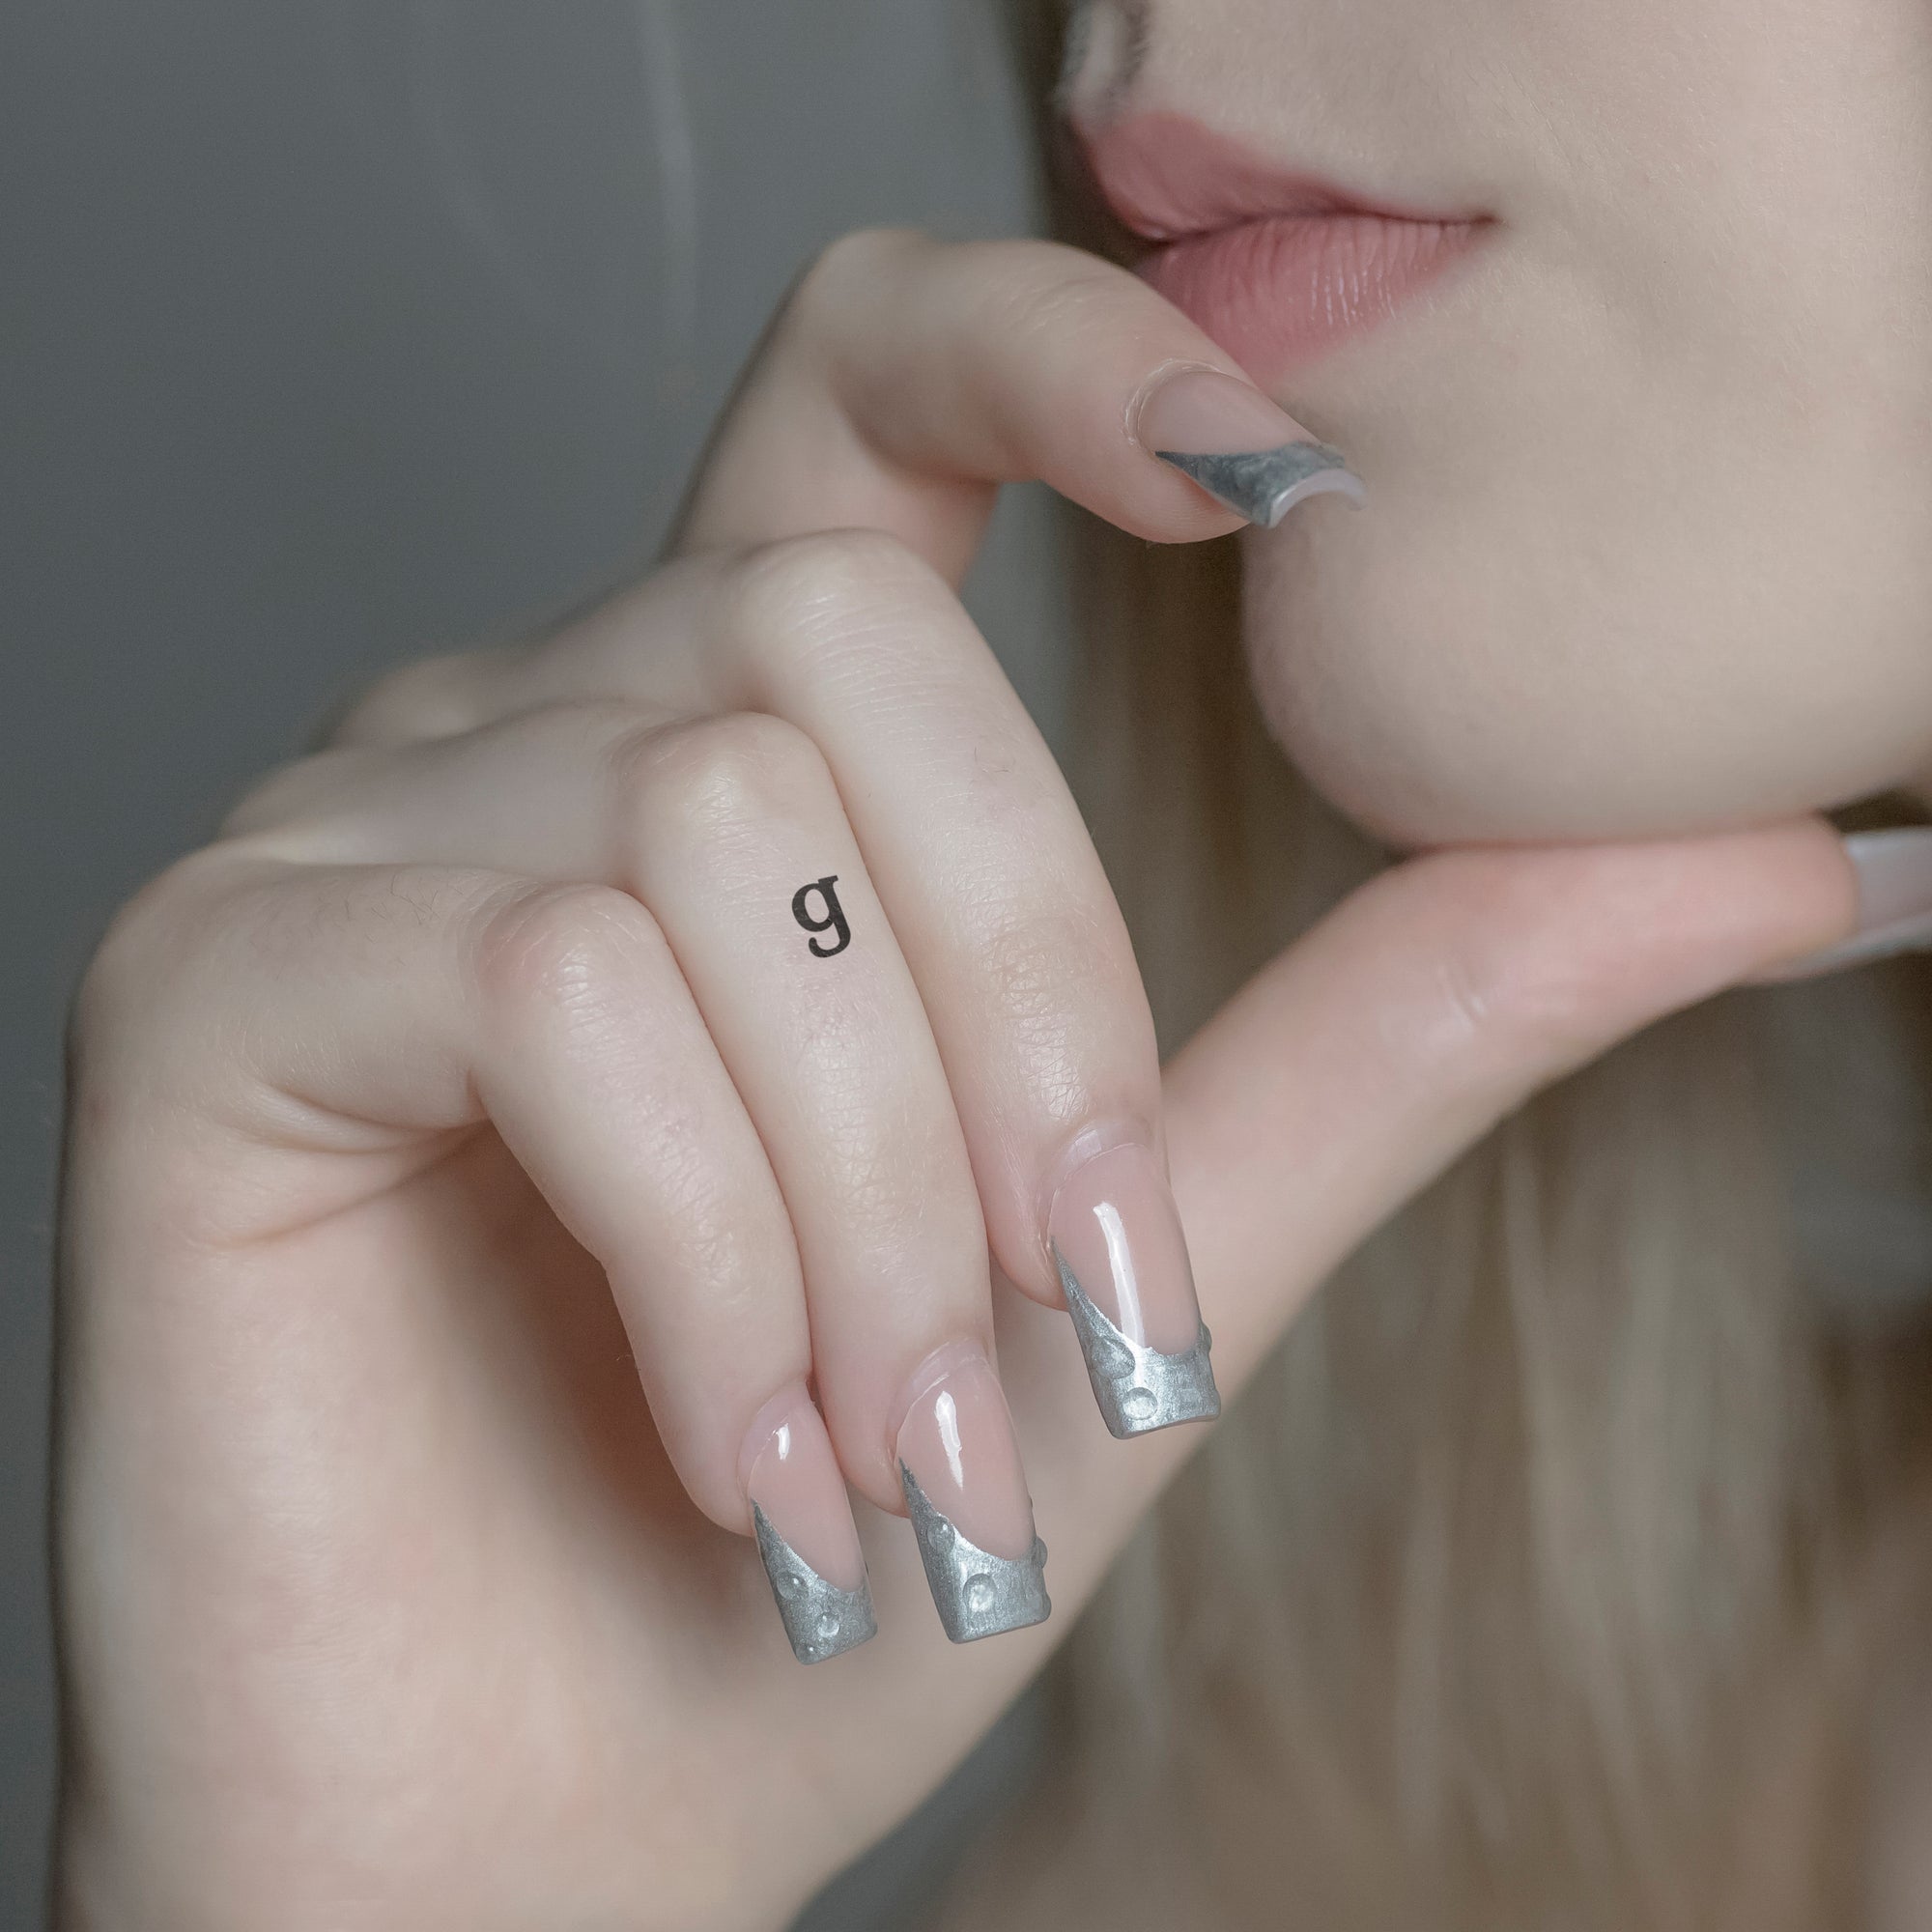 Schriftzug Tattoo Kleinbuchstabe: g von minink, der Marke für temporäre Tattoos.